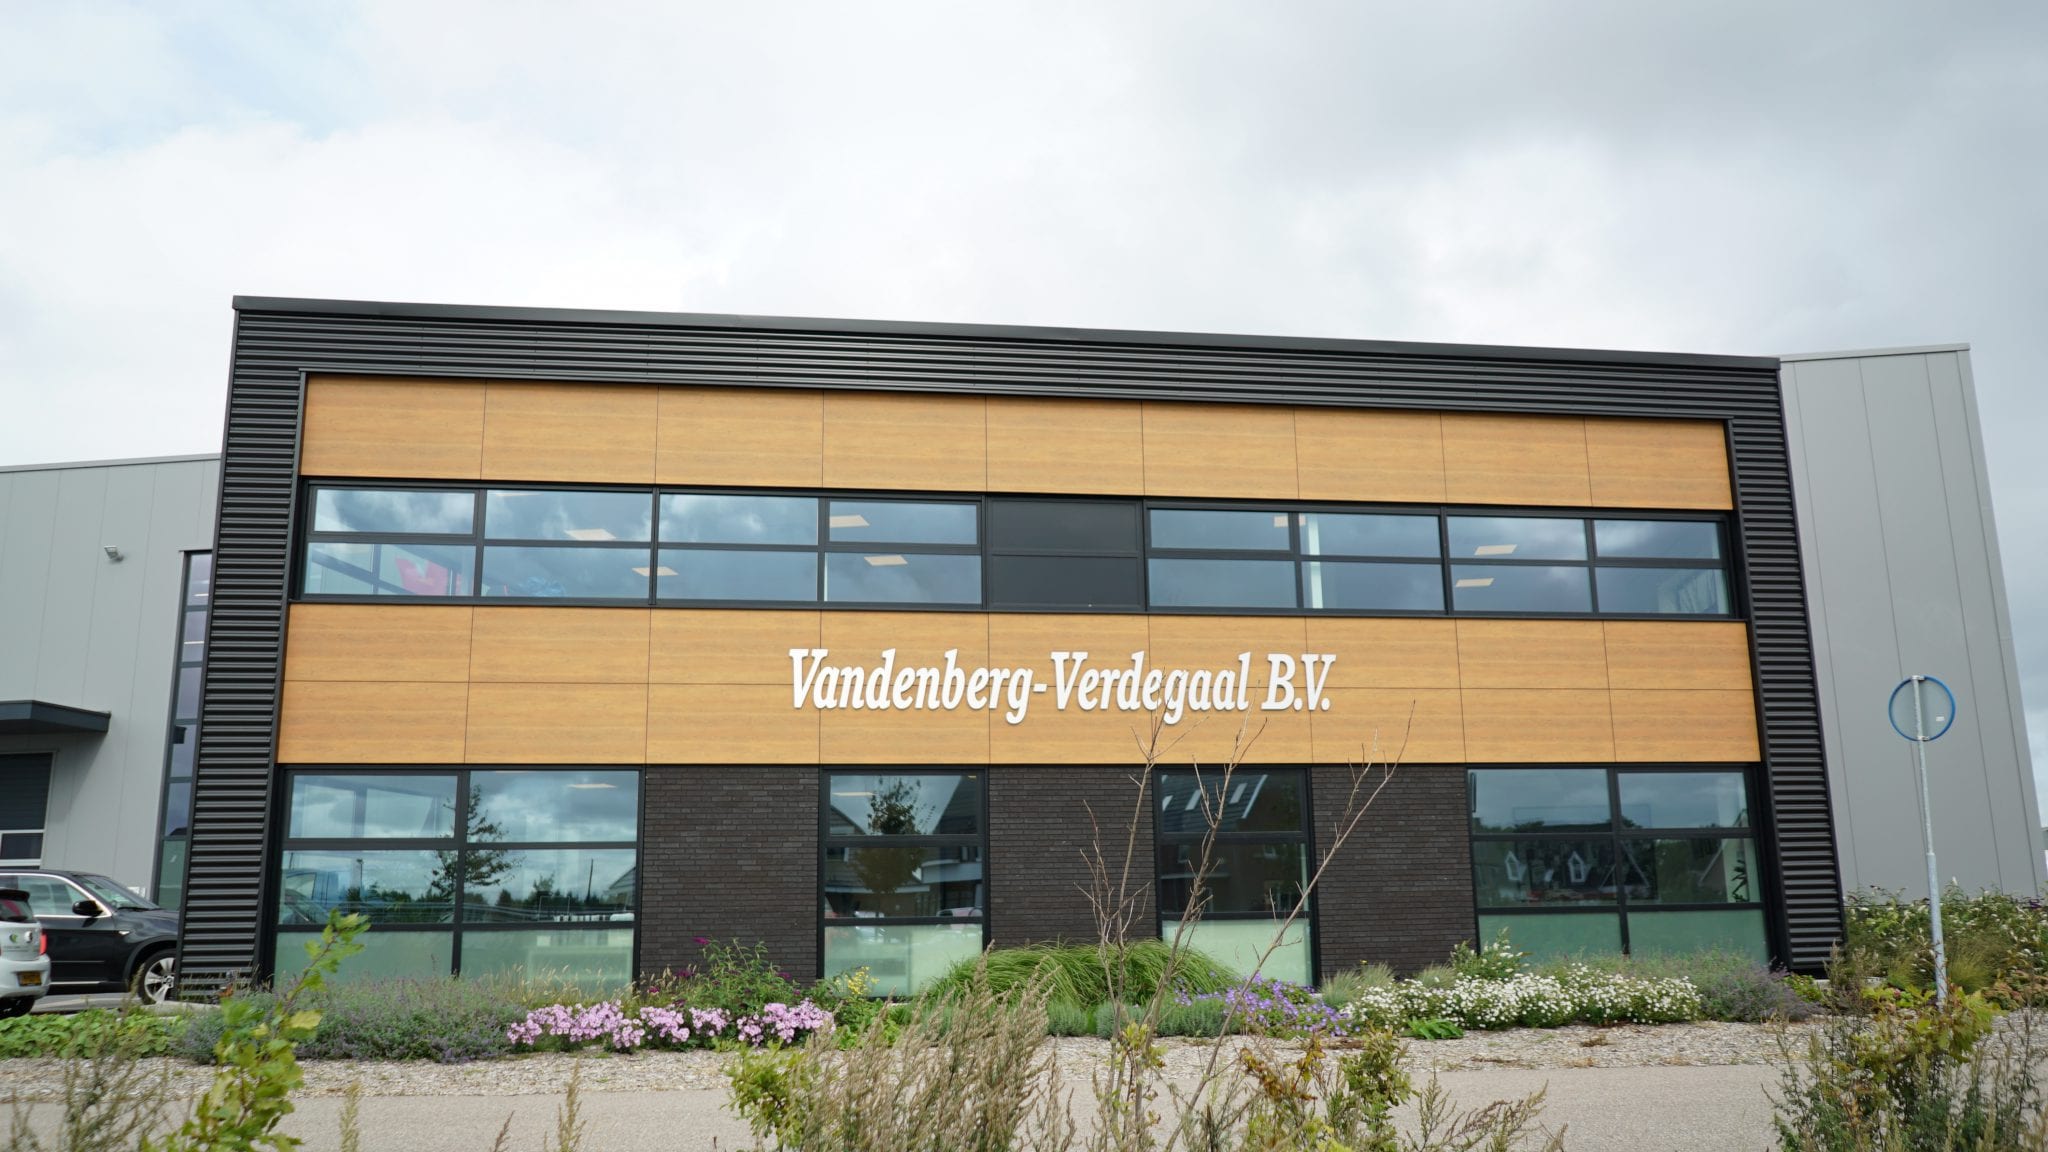 Vandenberg Noordwijkerhout